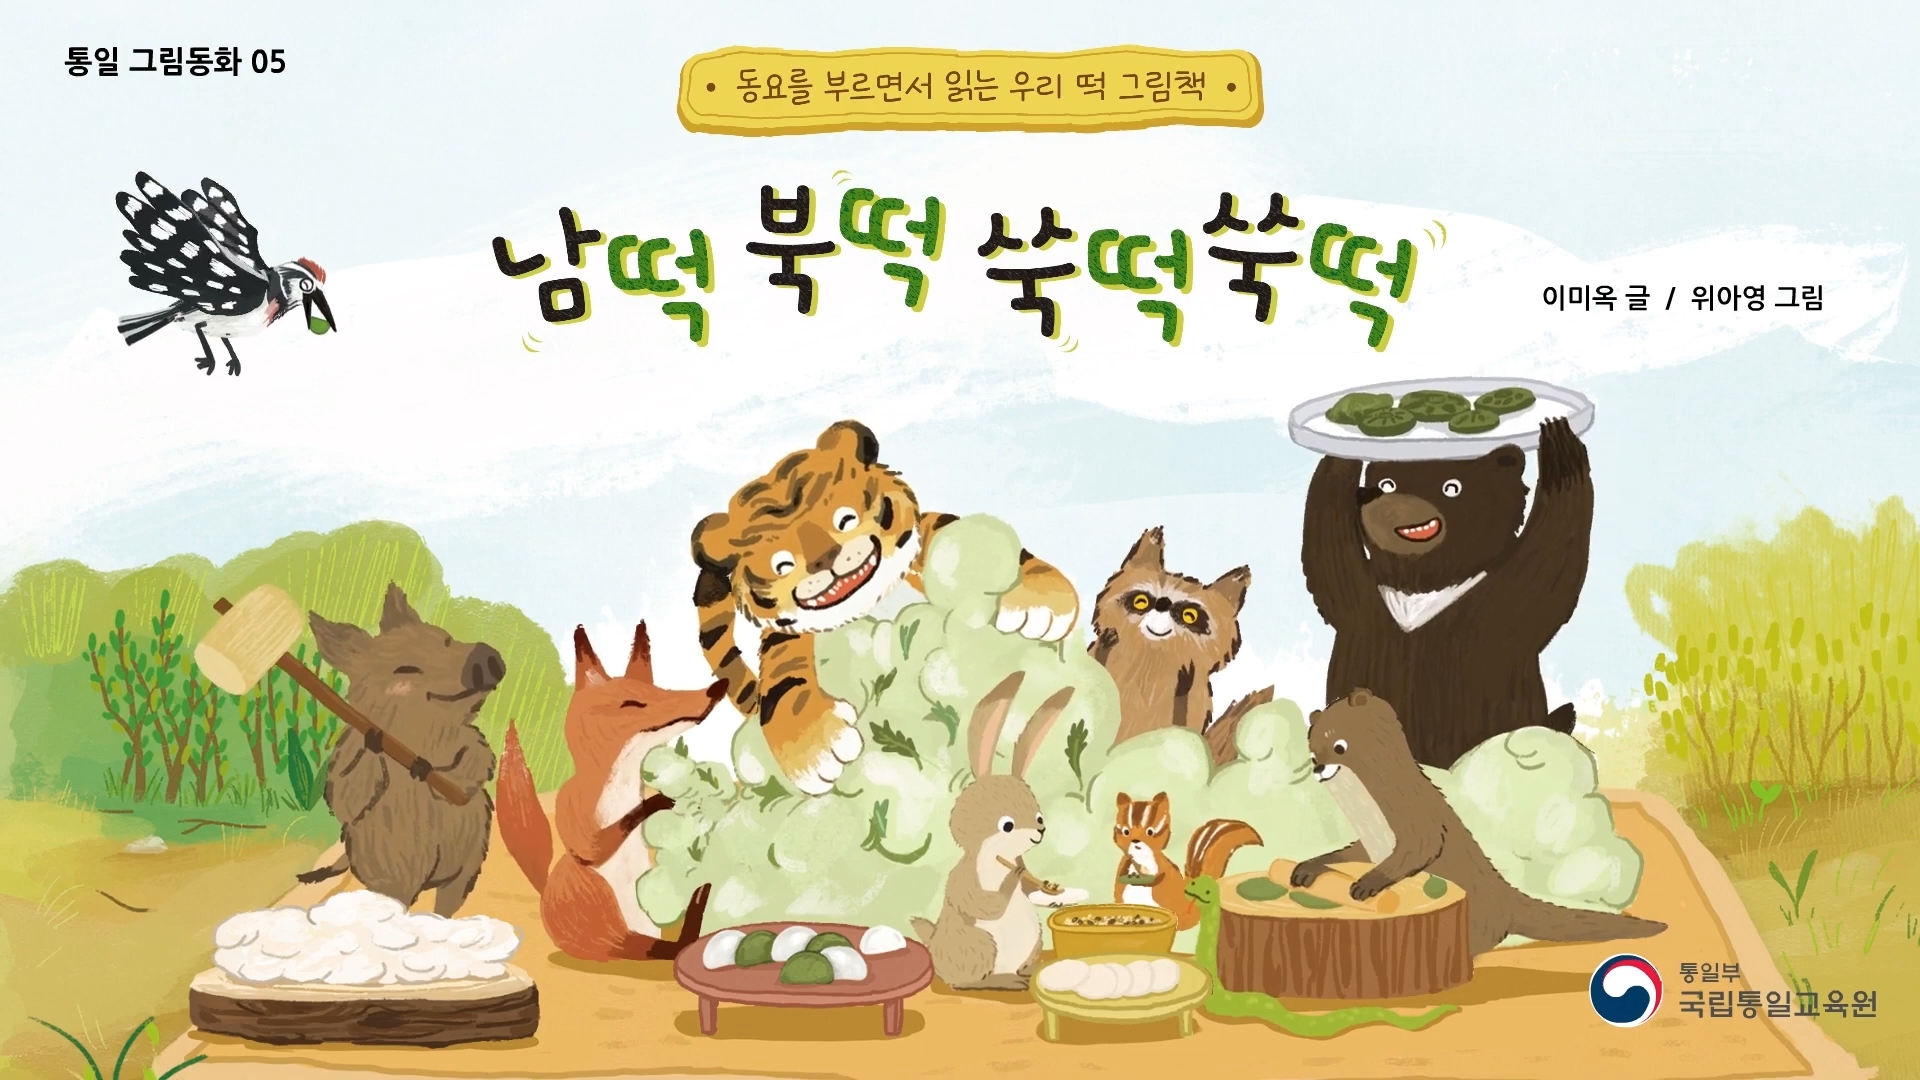 『남떡 북떡 쑥떡 쑥떡』 리뷰영상